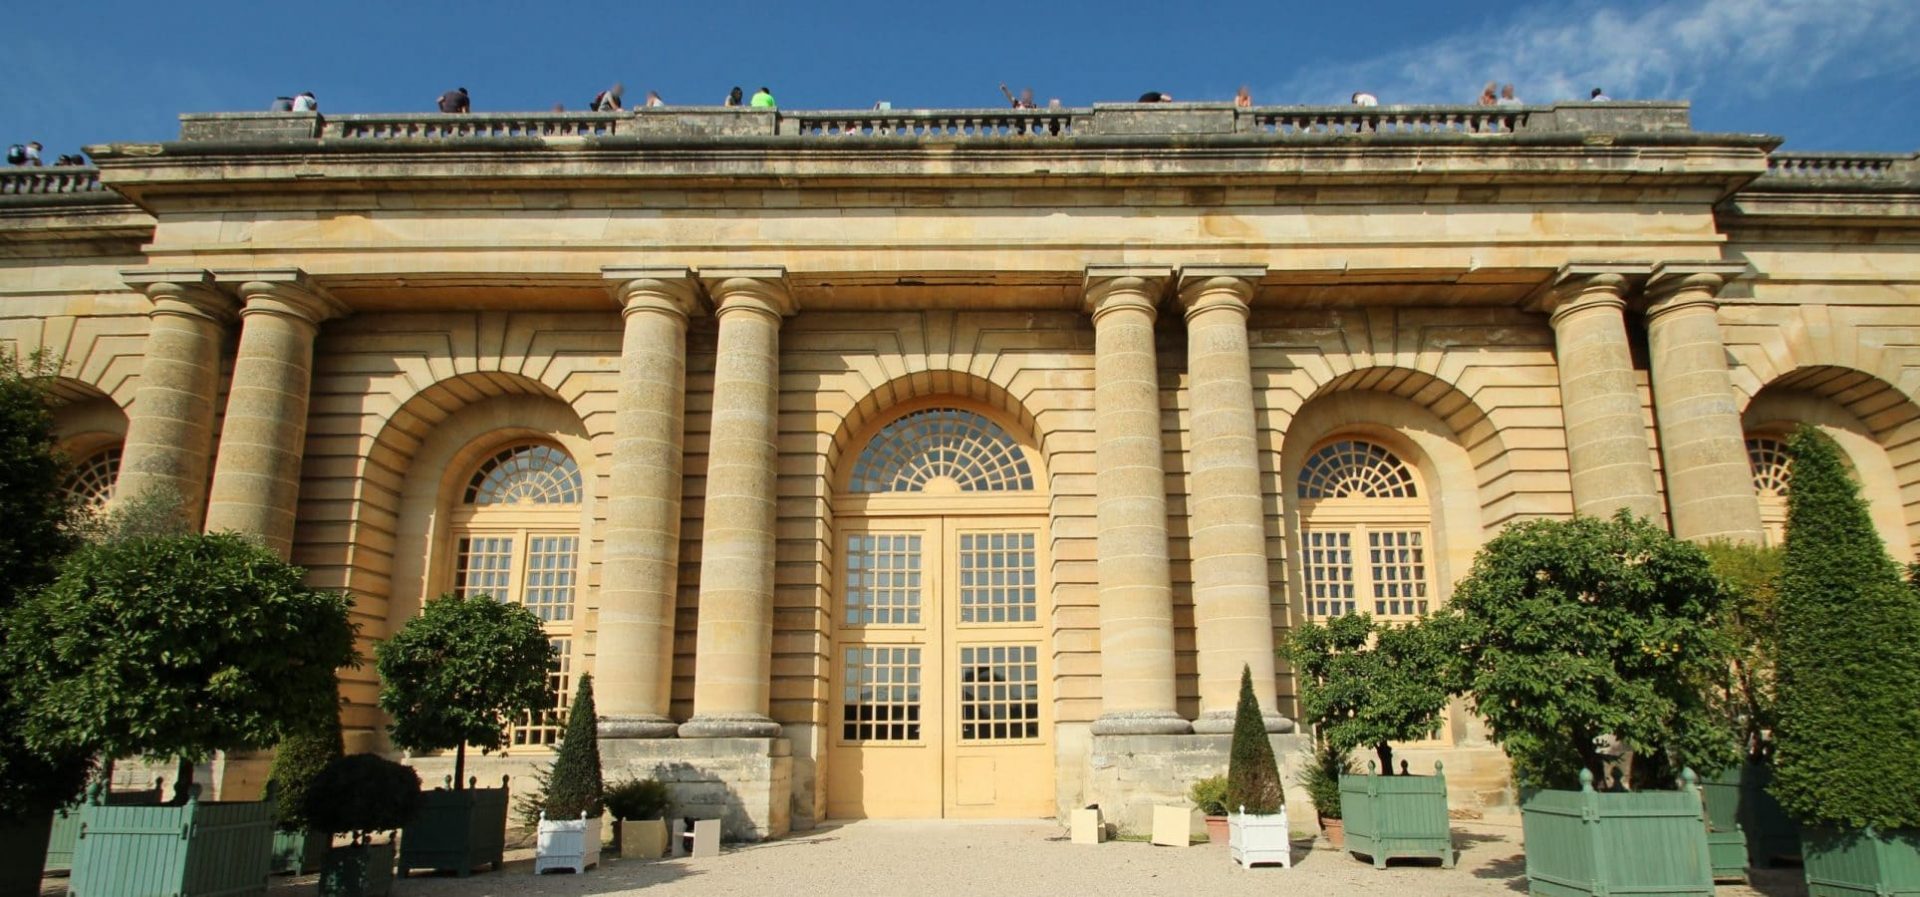 Orangerie_du_chateau_de_Versailles-Picture-by-Lionel-Allorge-scaled